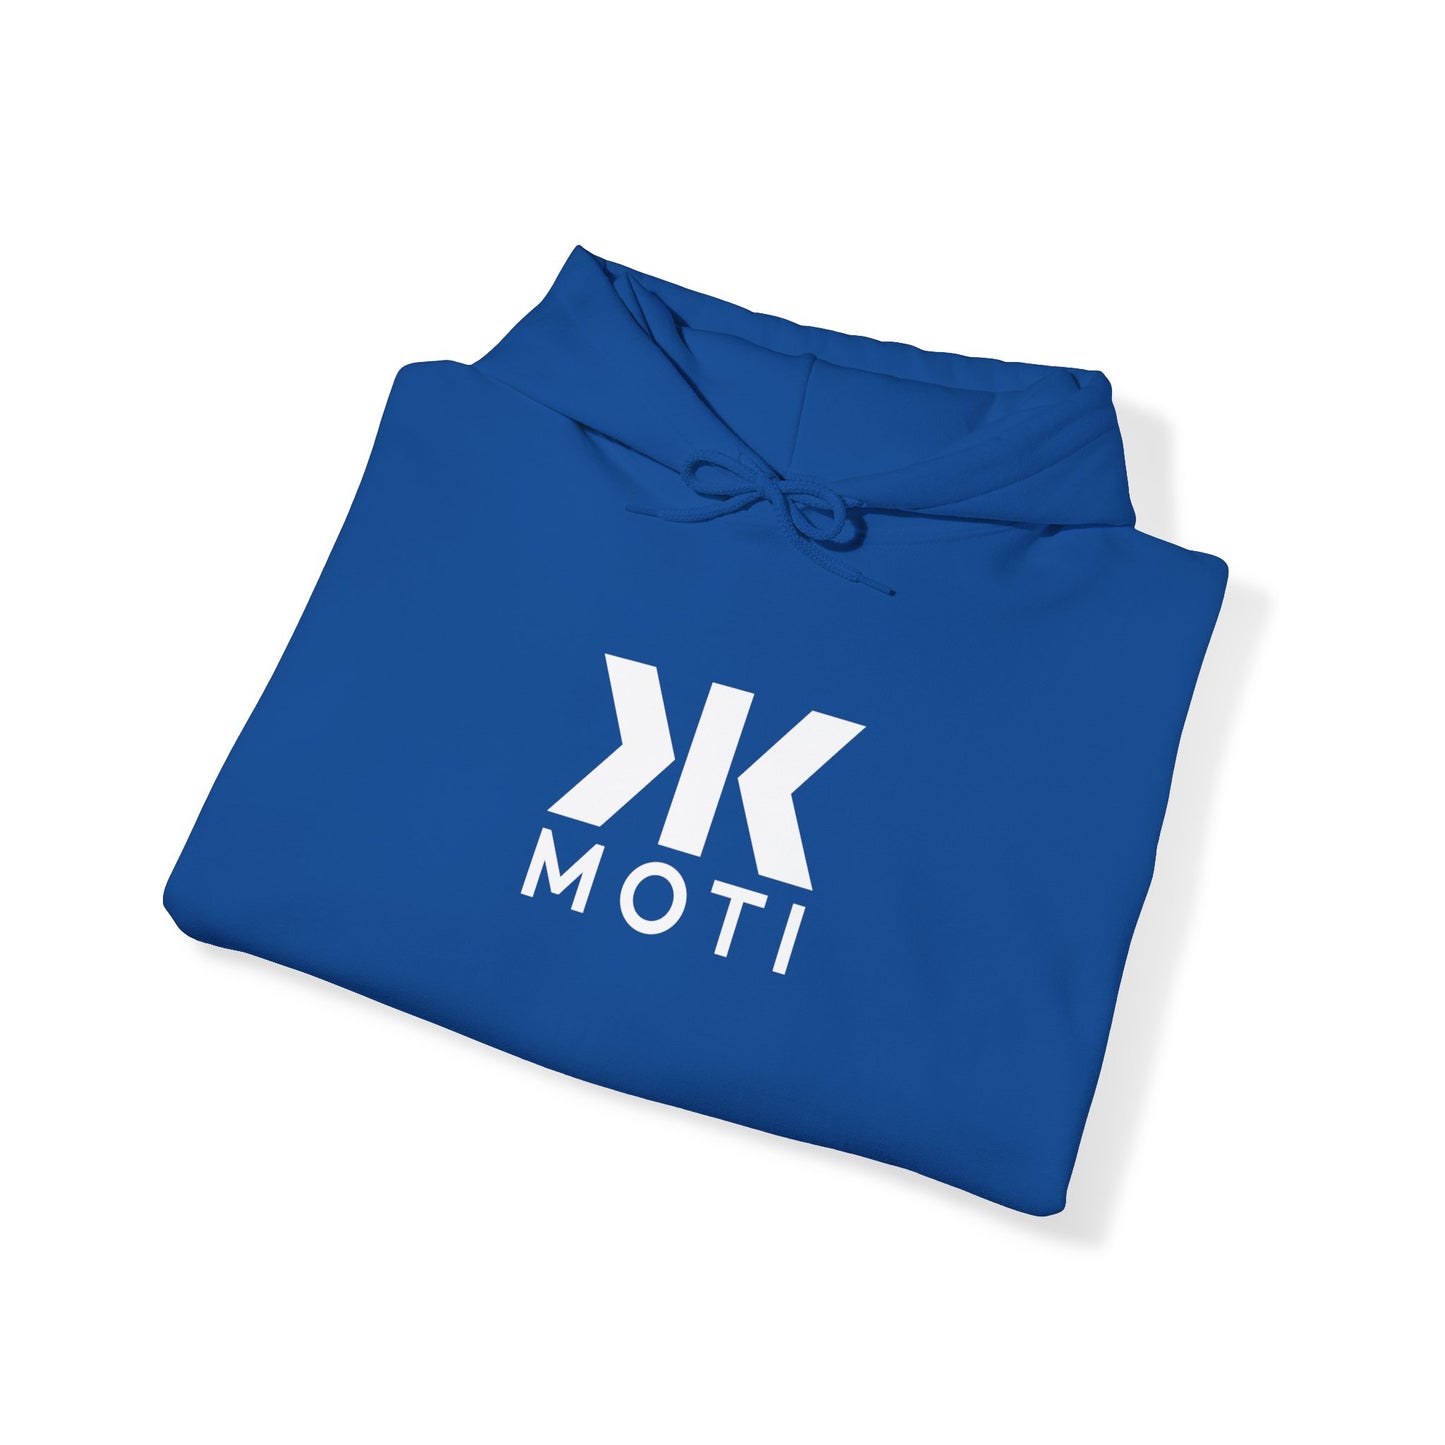 "MOTI" Motivated Hoodie! - Unisex Heavy Blend™ Hooded Sweatshirt